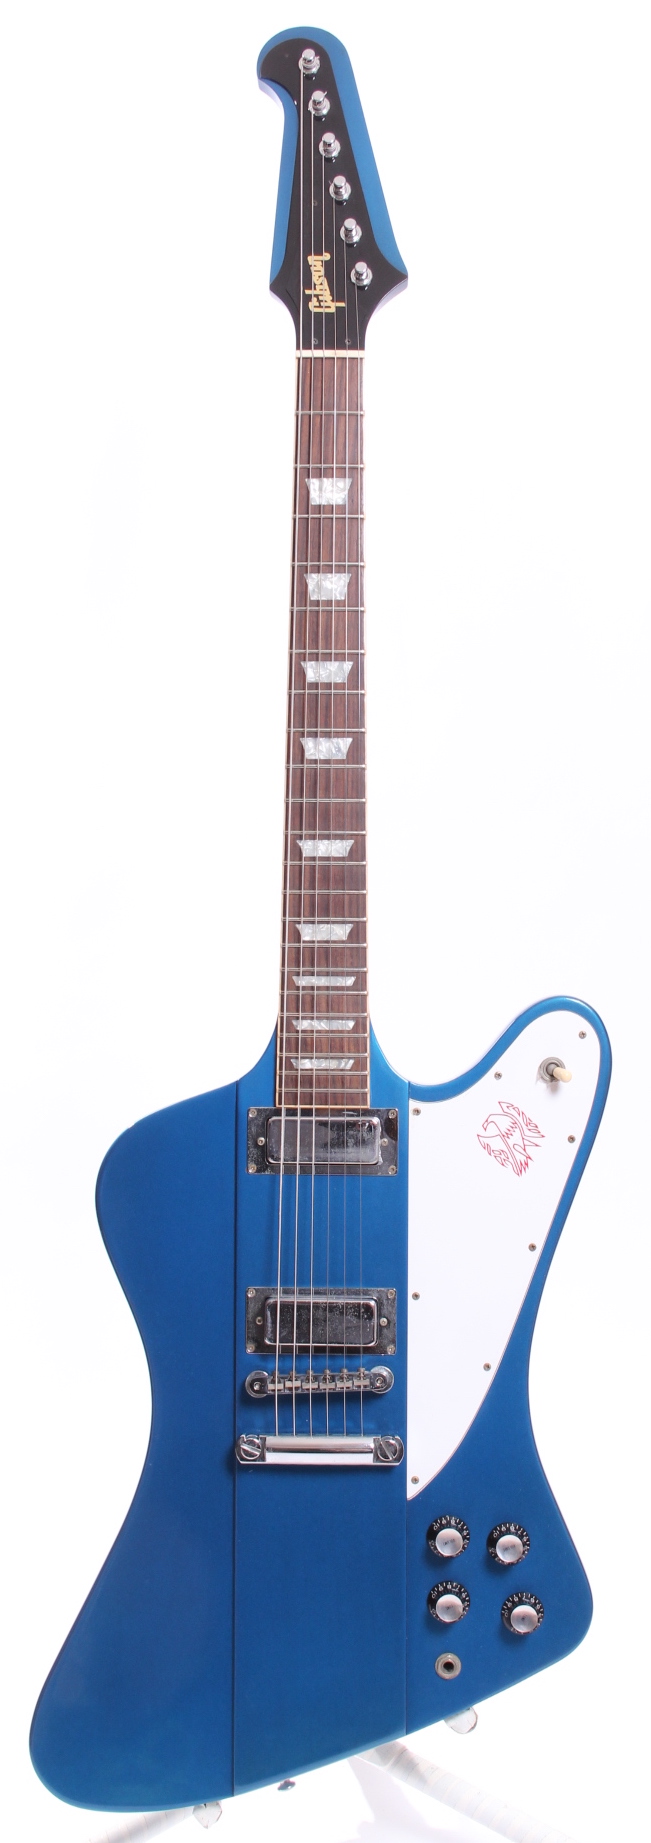 Gibson Firebird V 2001 Pelham Blue Guitar For Sale Yeahman's Guitars